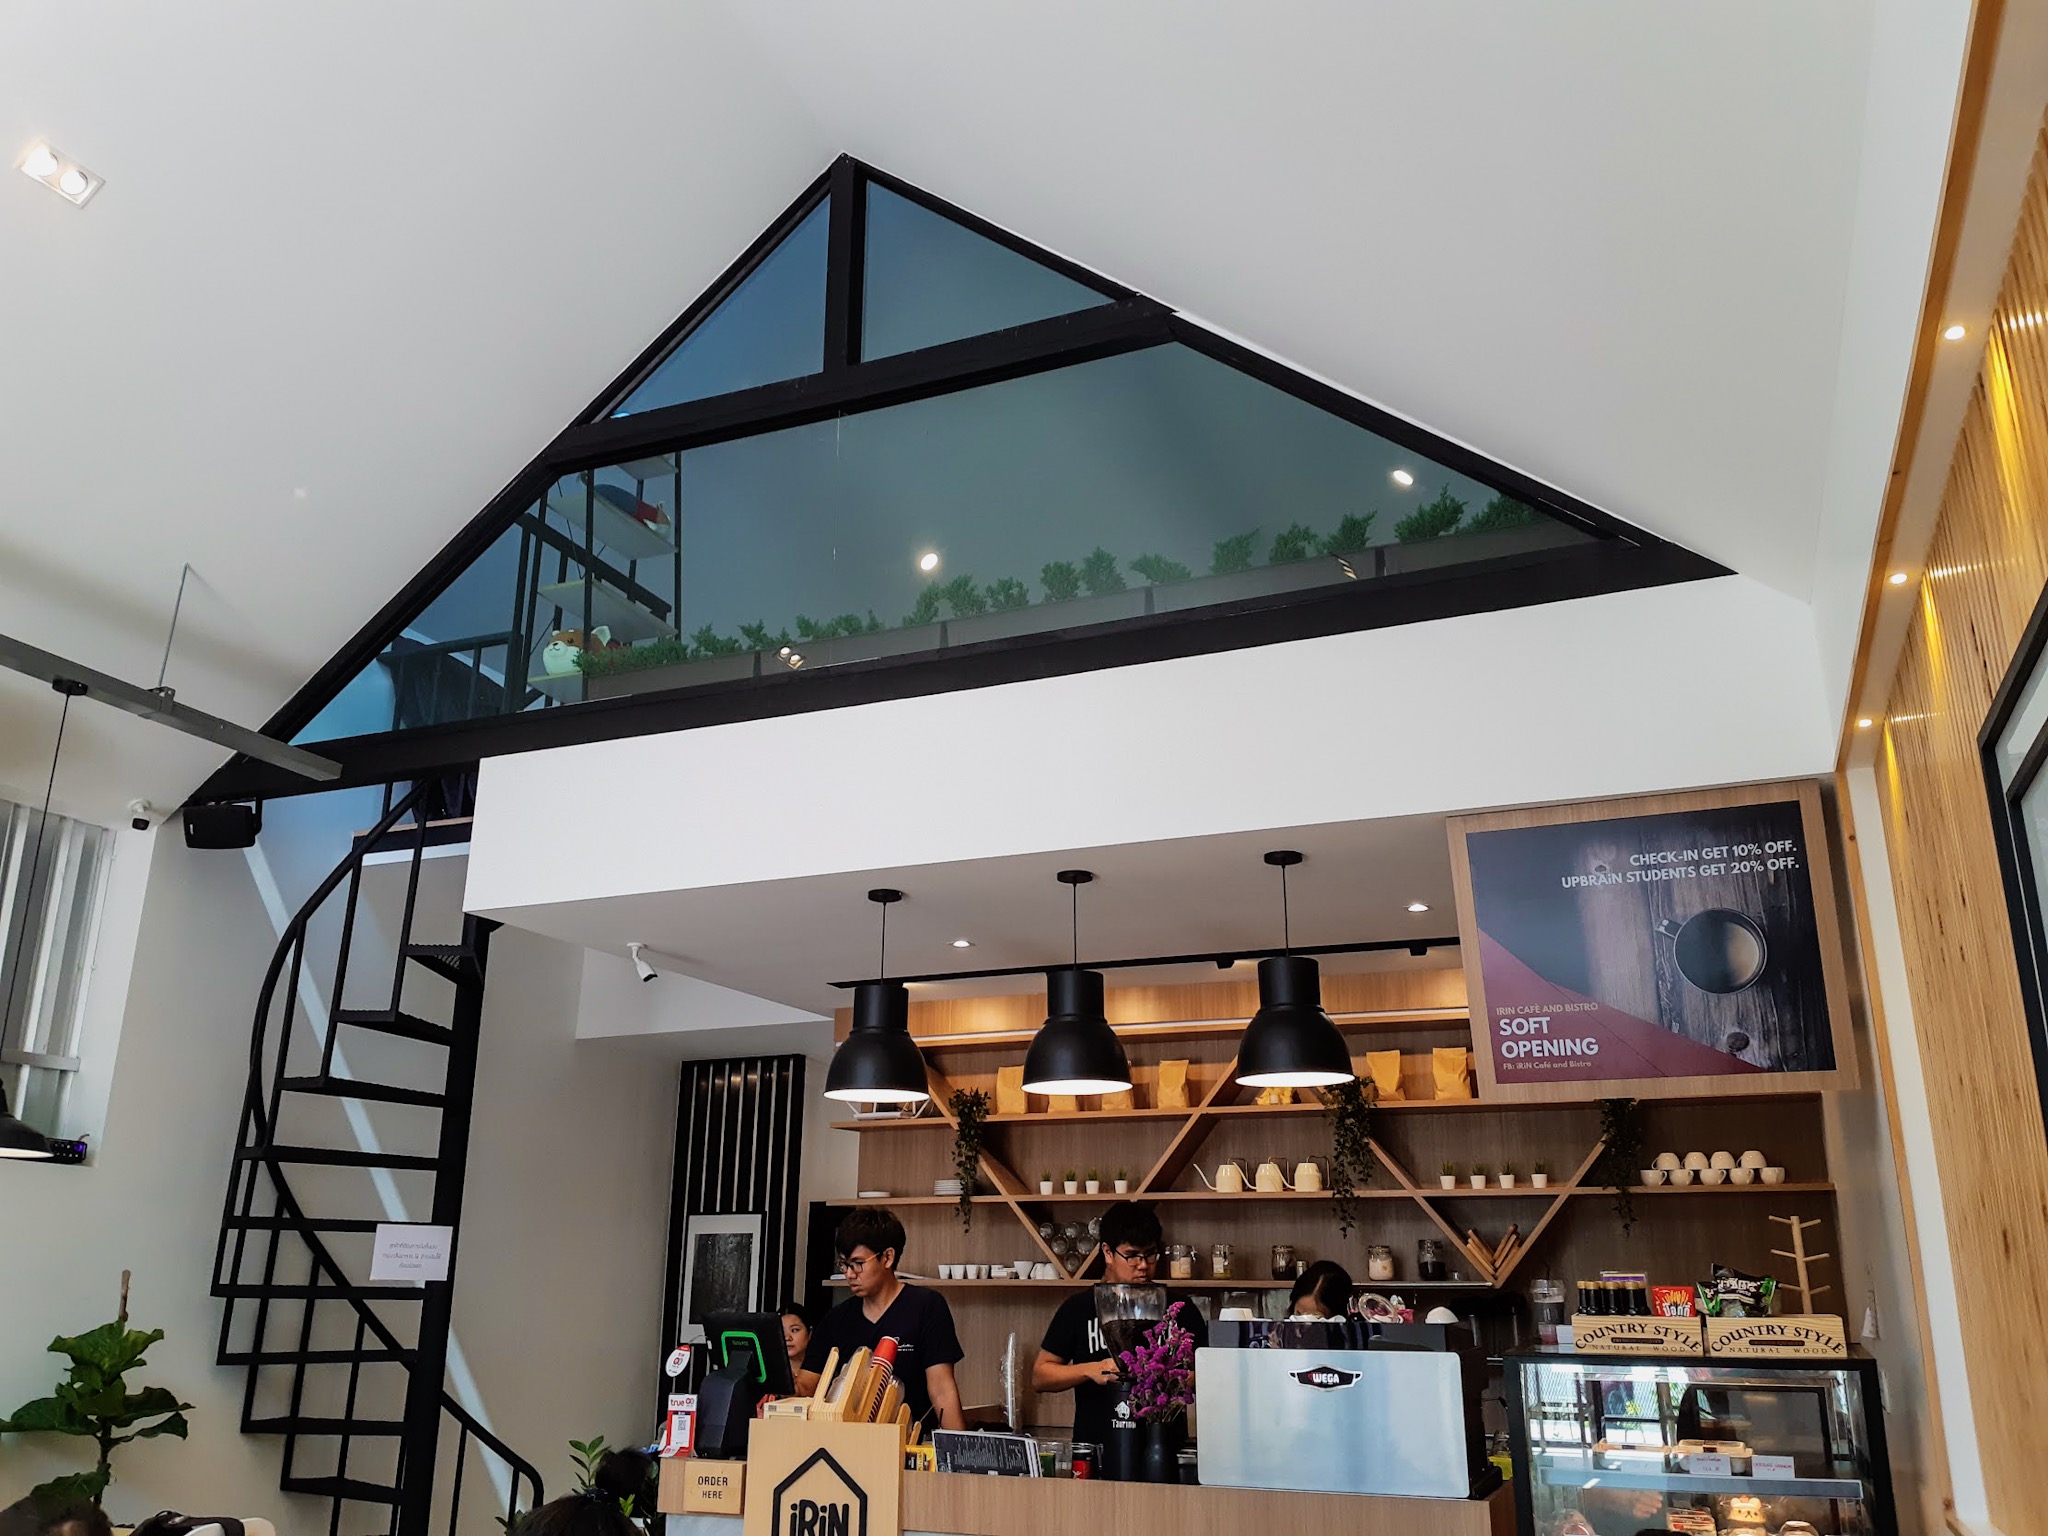 รูปภาพของ iRin Cafe and Bistro ร้านกาแฟเปิดใหม่ไอริน โดนใจทุกคน